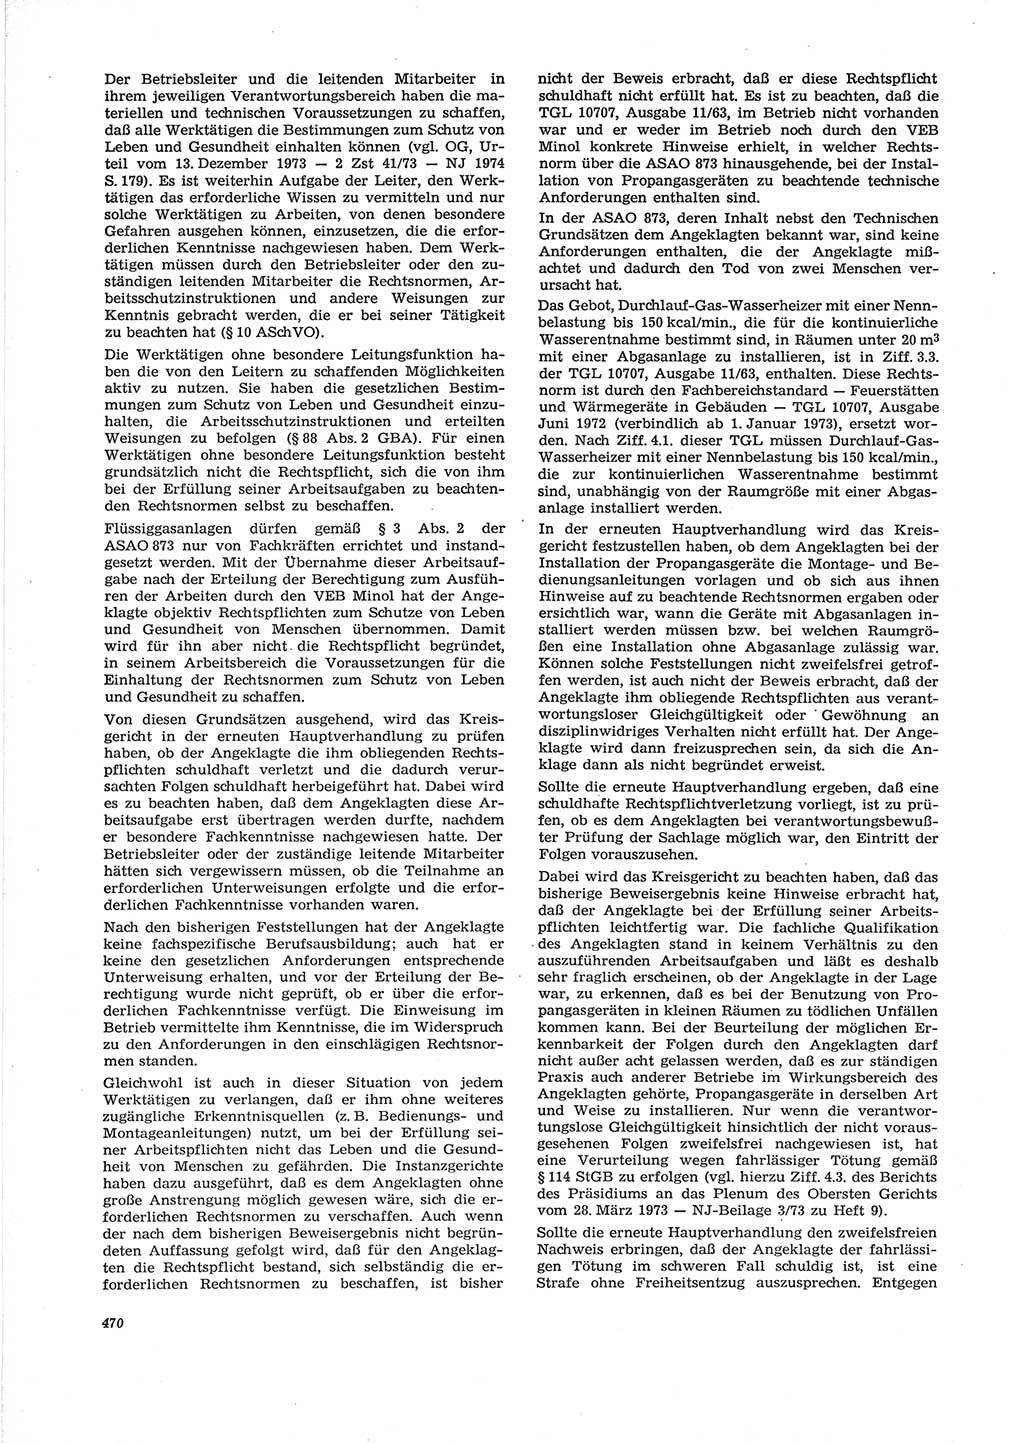 Neue Justiz (NJ), Zeitschrift für Recht und Rechtswissenschaft [Deutsche Demokratische Republik (DDR)], 28. Jahrgang 1974, Seite 470 (NJ DDR 1974, S. 470)